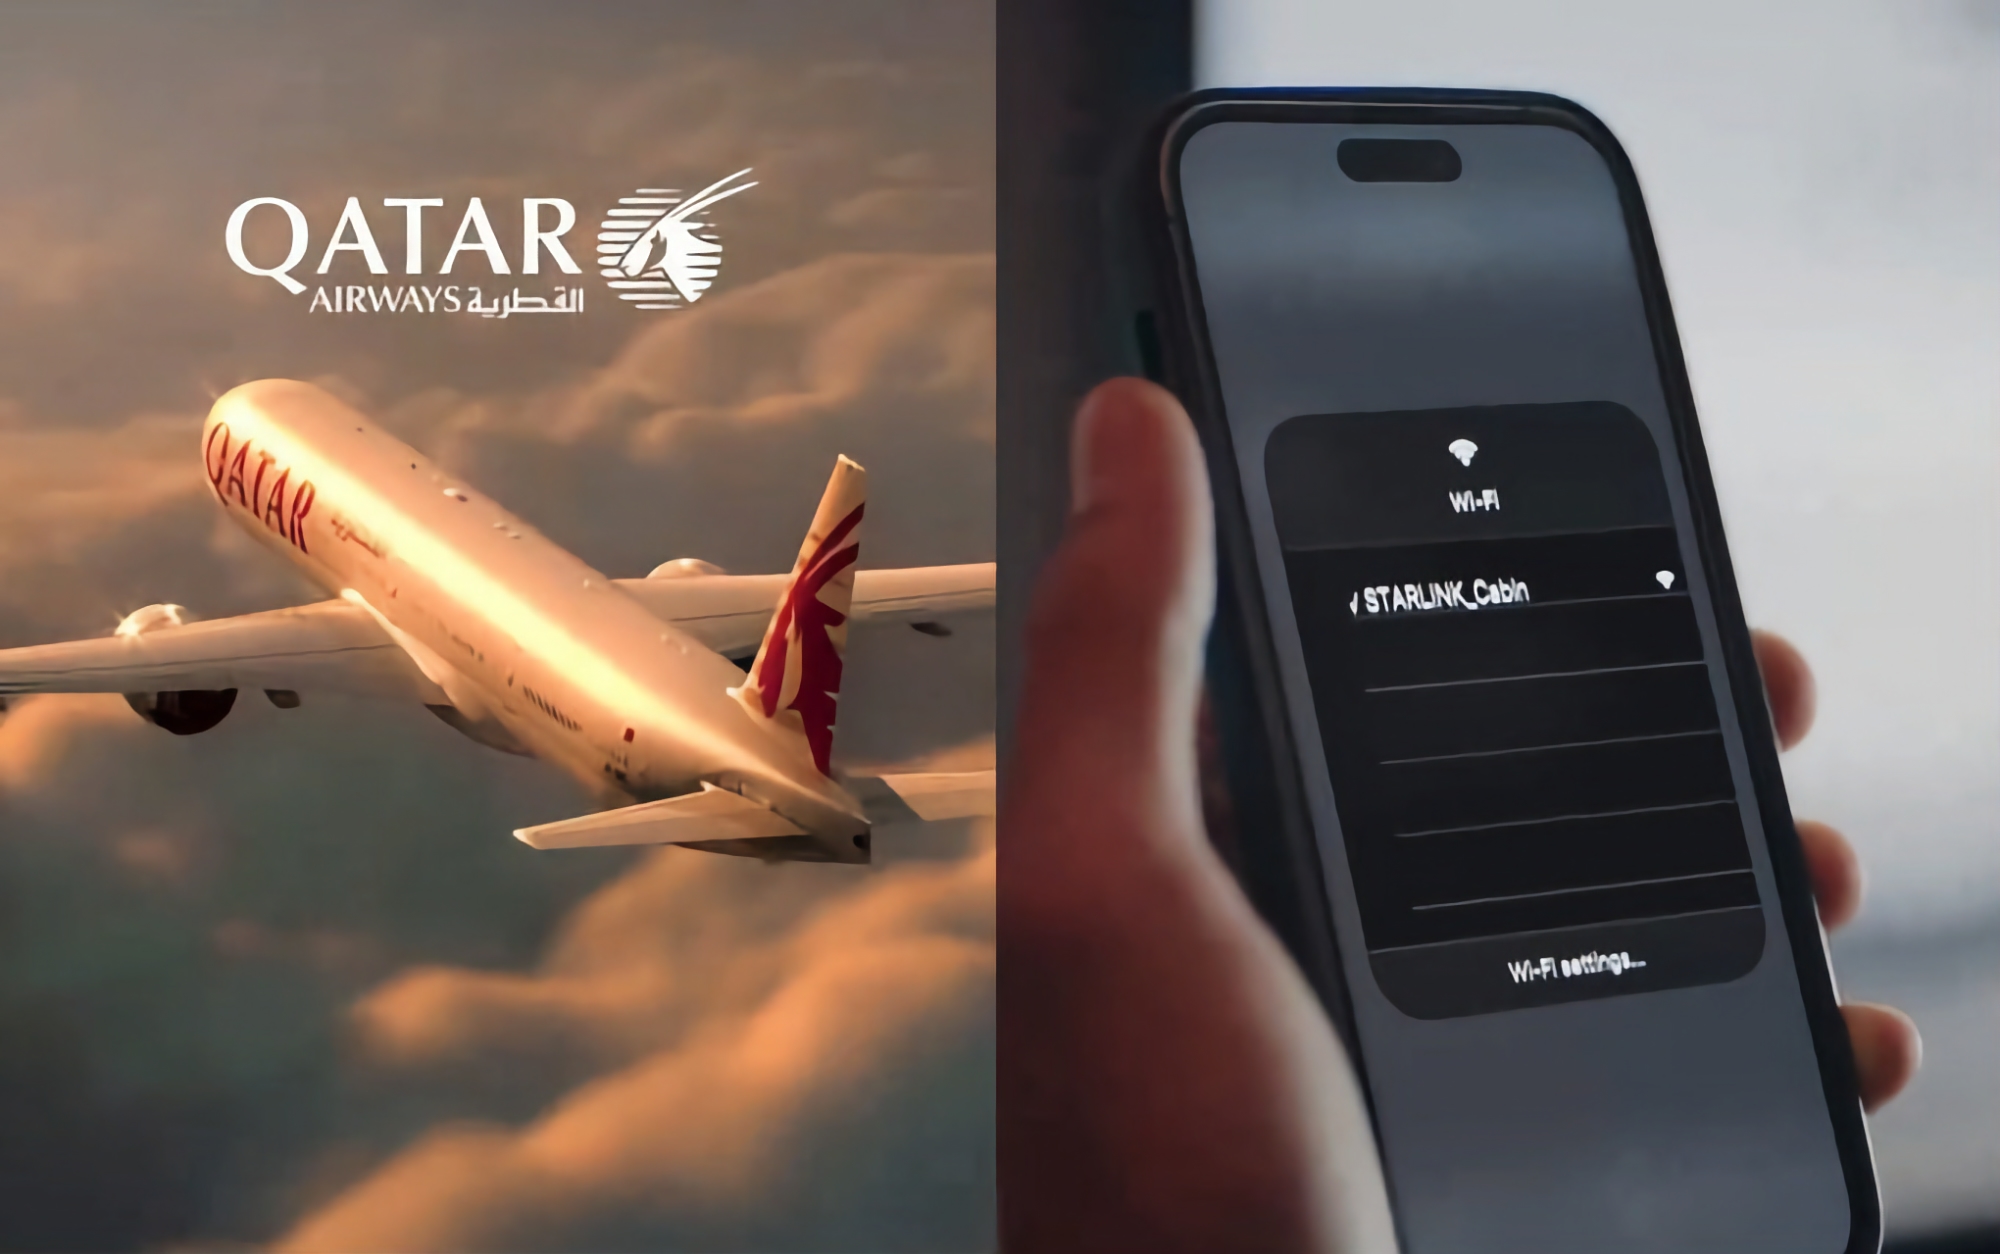 Hastigheter på upp till 500 Mbps på 13 000 meters höjd: Qatar Airways kommer att installera Ilon Musks Starlink satellitinternet på vissa Boeing 777-300 flygplan